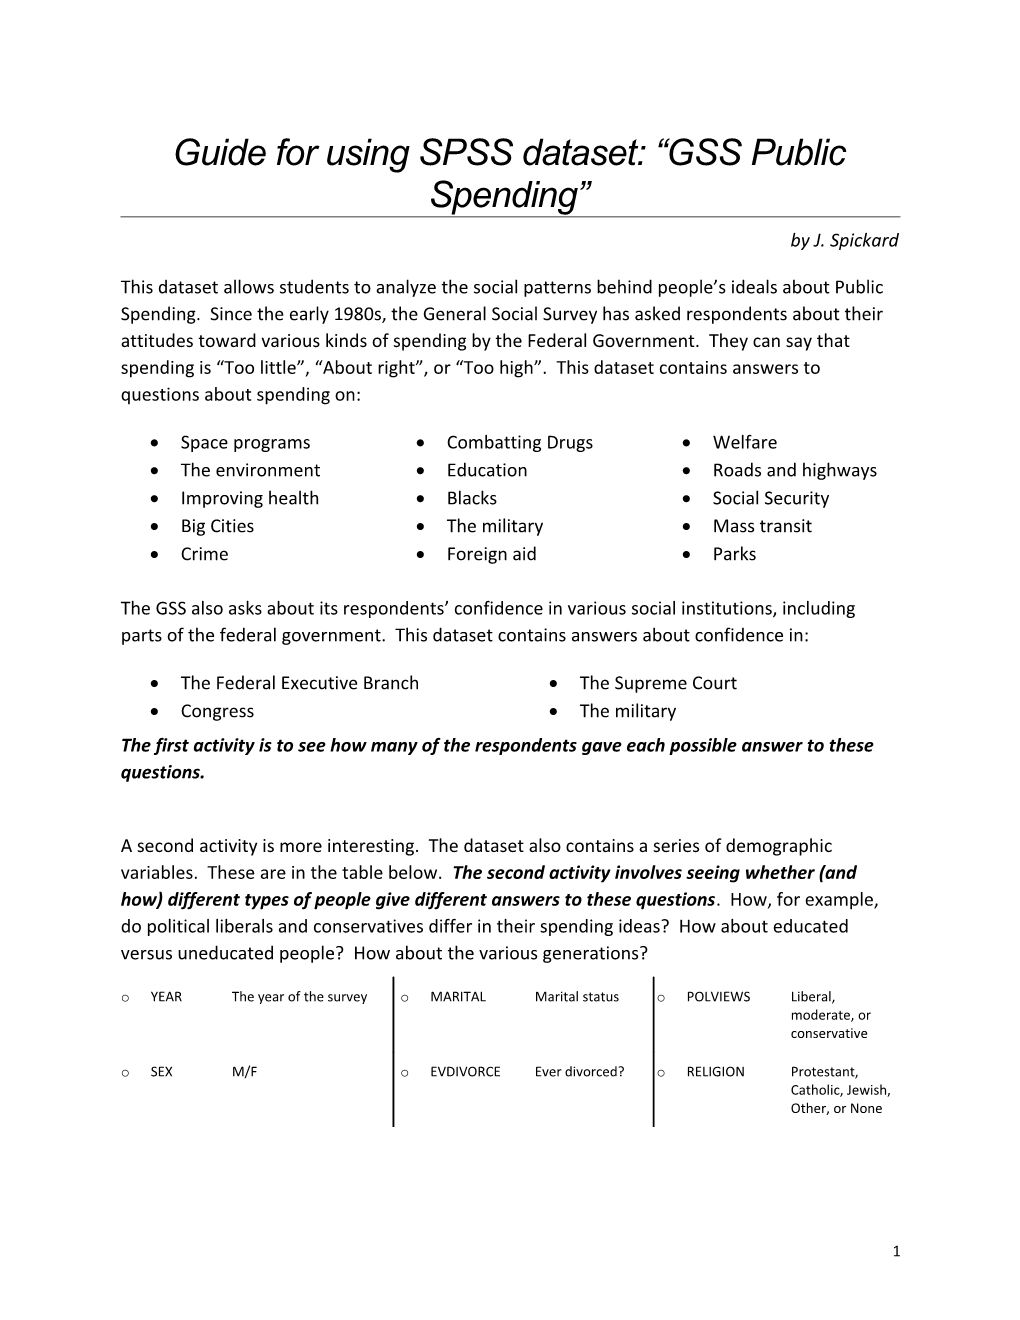 Guide for Using SPSS Dataset GSS Public Spending